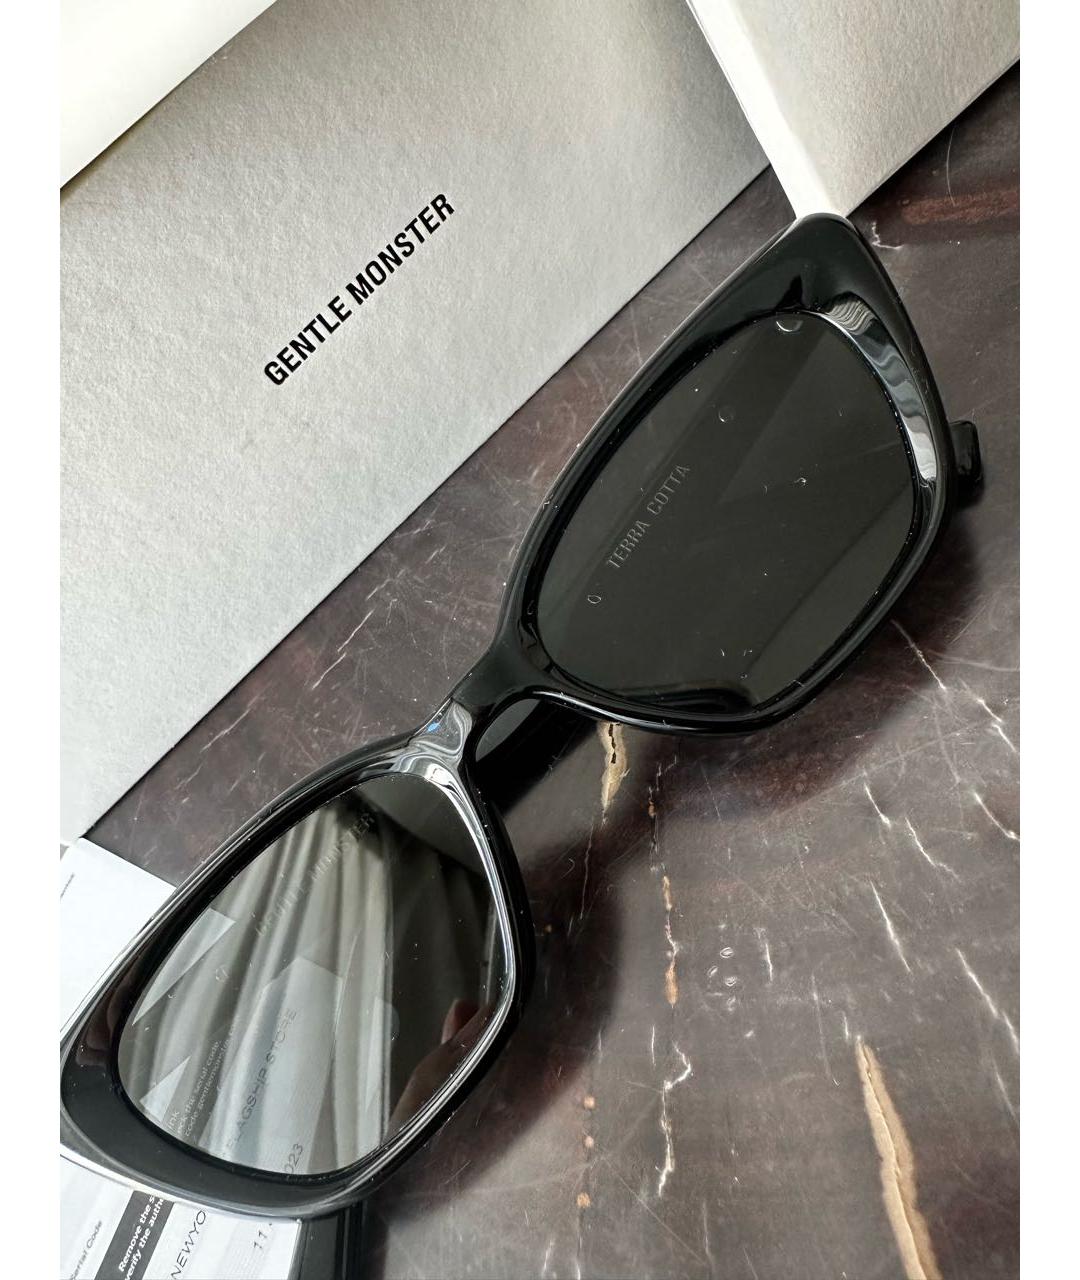 GENTLE MONSTER Черные пластиковые солнцезащитные очки, фото 7